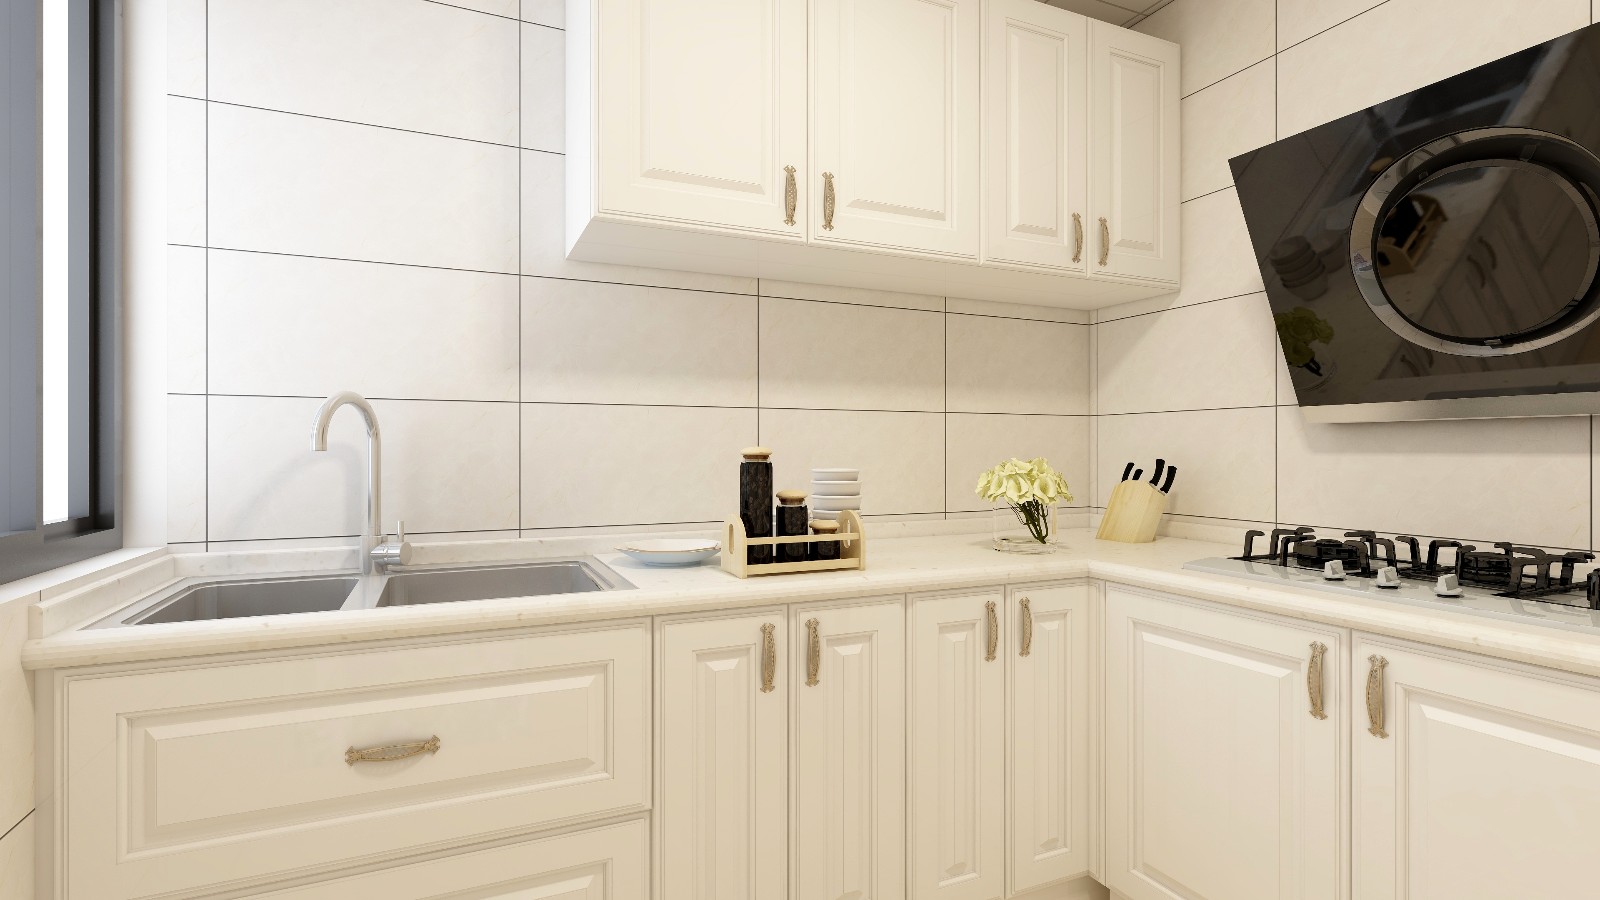 厨房光线较暗,采用亮色墙砖搭配白色橱柜,花纹大理石台面提亮整个空间